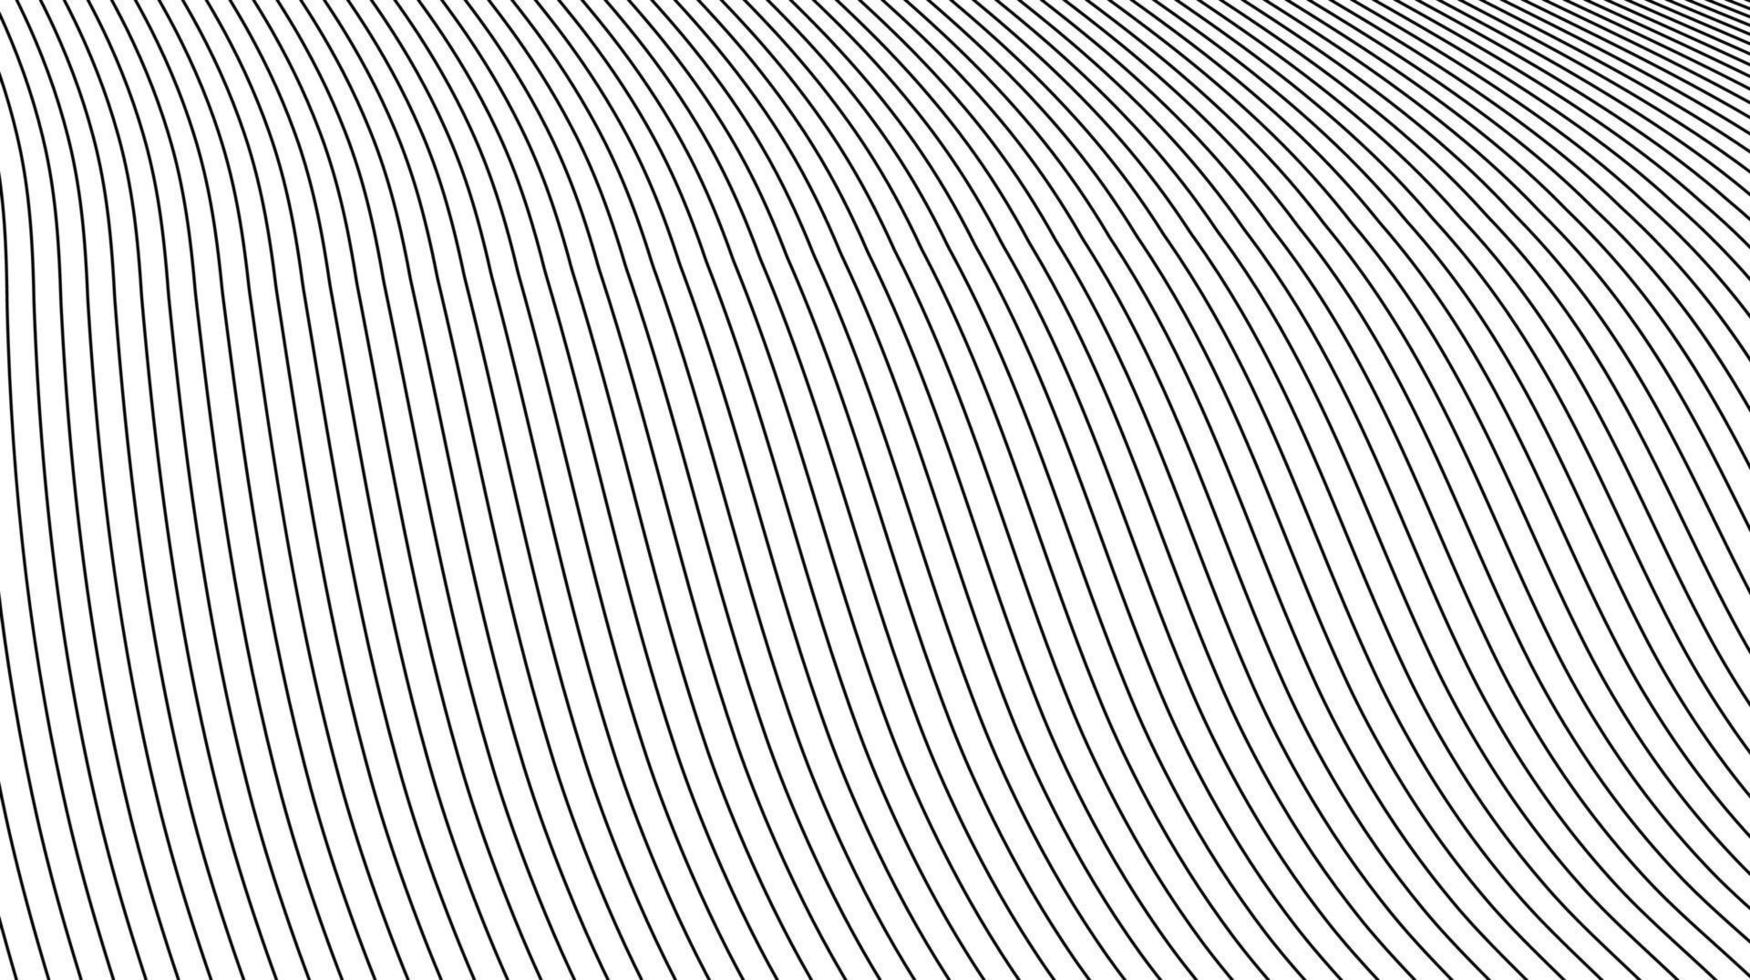 resumo de linhas topográficas minimalistas simples. padrão de linhas cinzas no fundo branco vetor